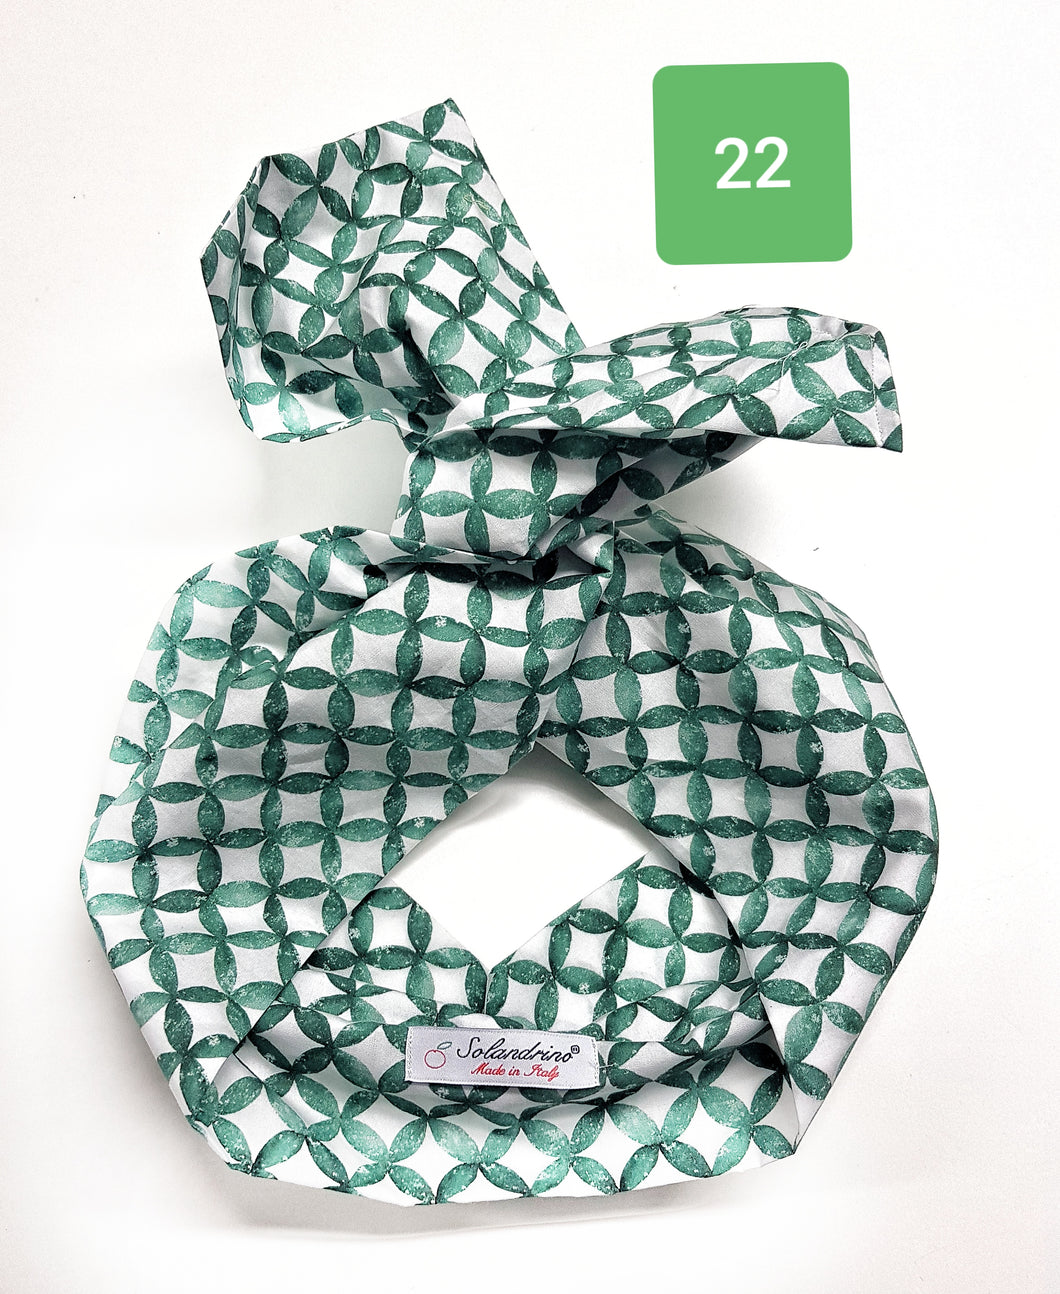 Turbante Fashion in cotone Fantasia design green 22 Made in Italy